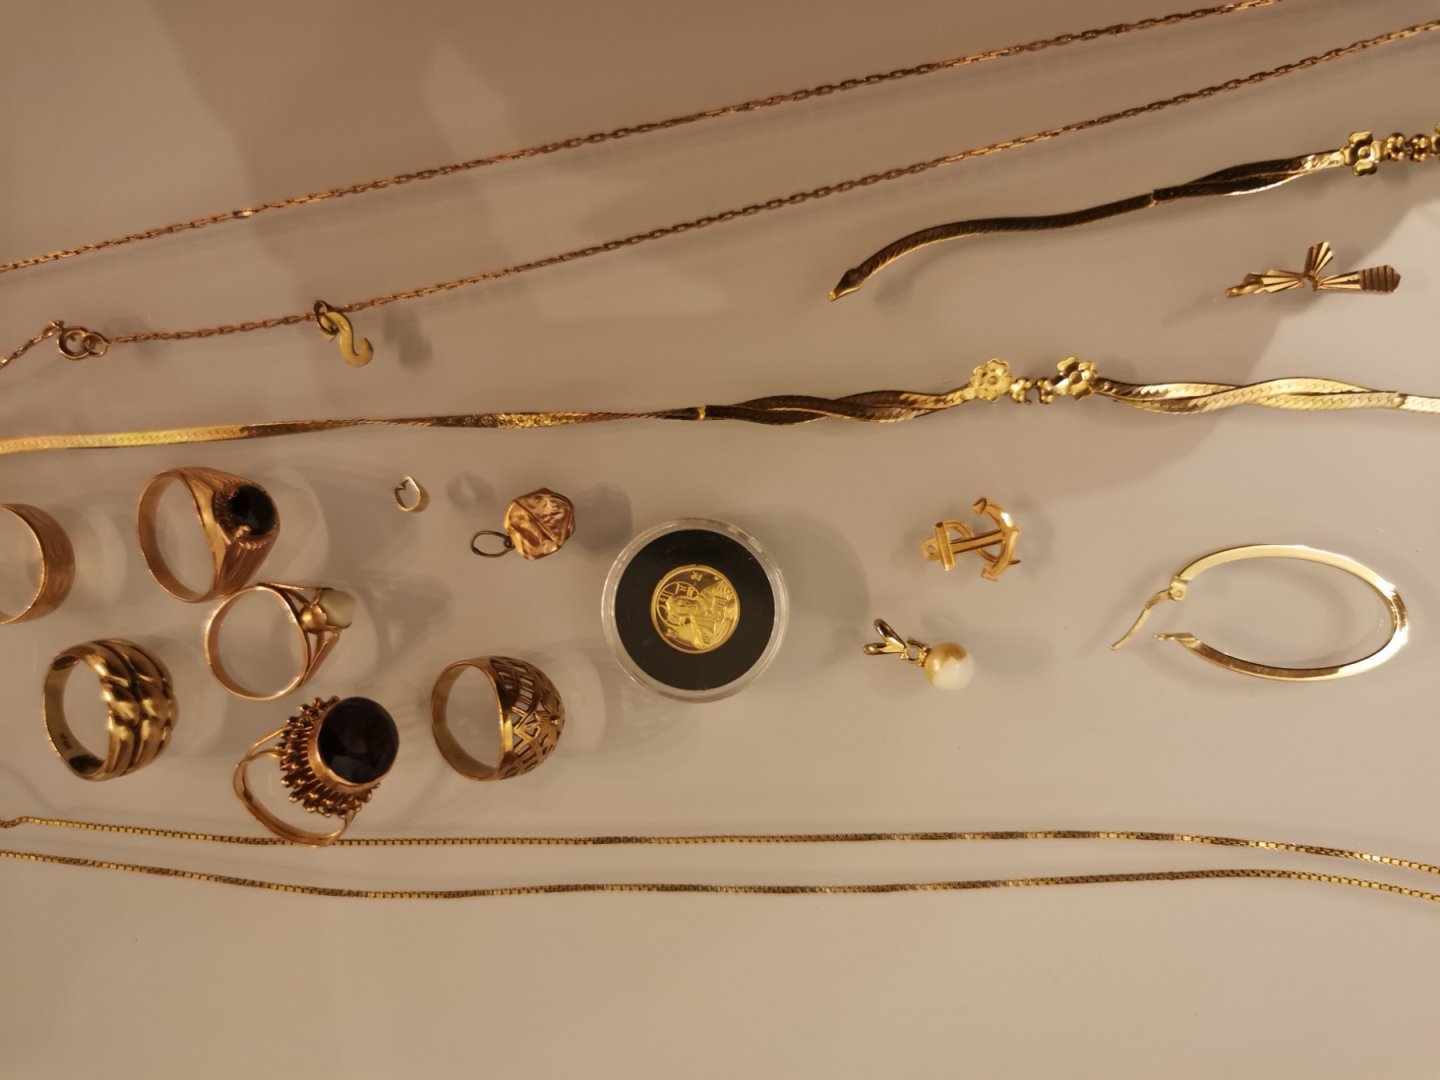 Златни накити са открити и иззети при претърсване на жилището, обитавано от двамата мъже. Снимки ОД на МВР